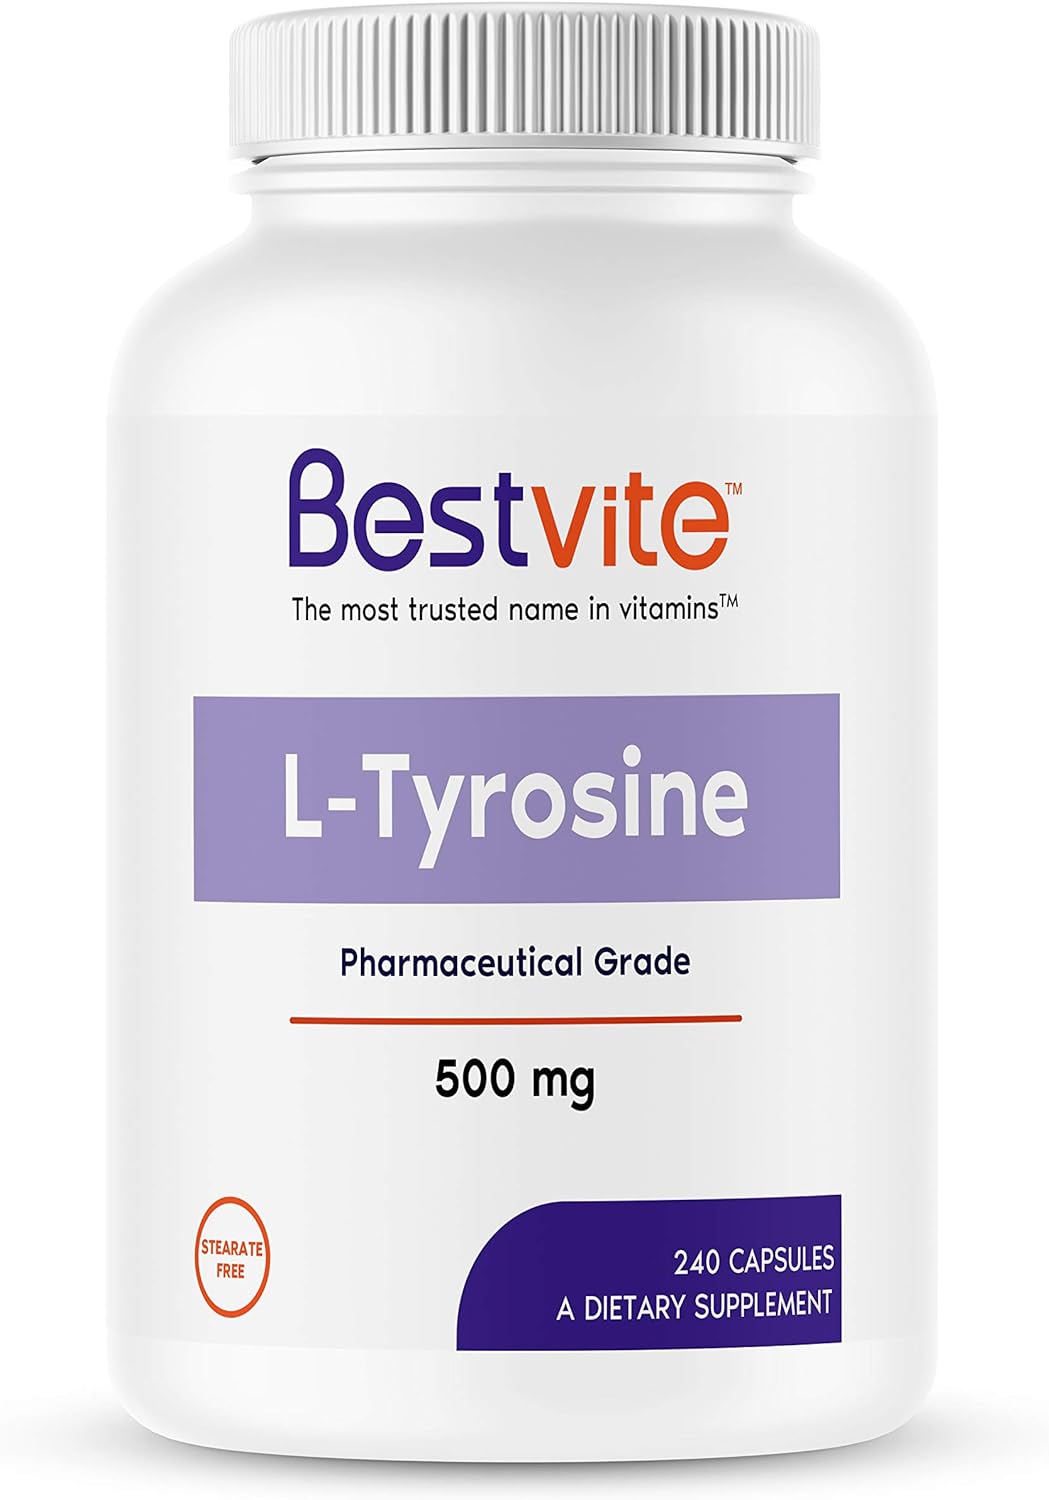 BESTVITE L-Tyrosine 500mg (240 Capsules) - No Stearates - Non GMO - Gl